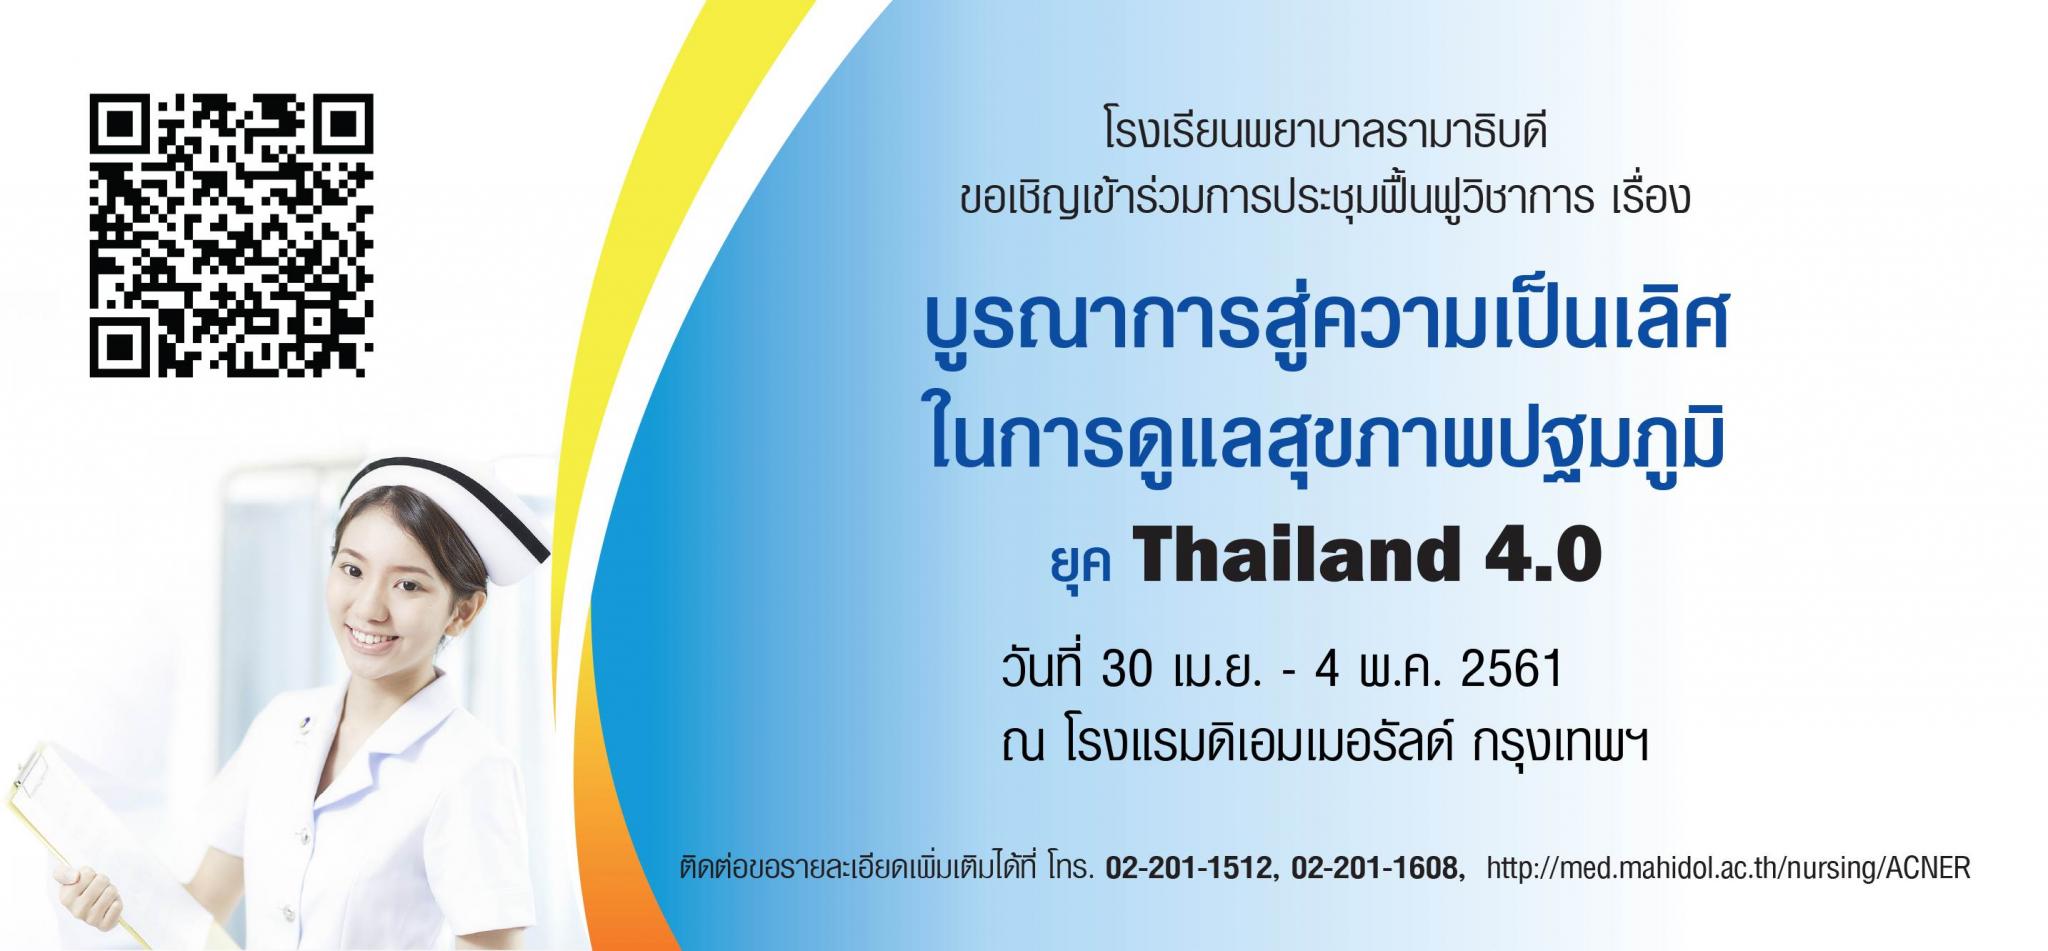 ขอเชิญเข้าร่วมการประชุมฟื้นฟูวิชาการเรื่อง บูรณาการสู่ความเป็นเลิศในการดูแลสุขภาพปฐมภูมิ ยุค Thailand 4.0